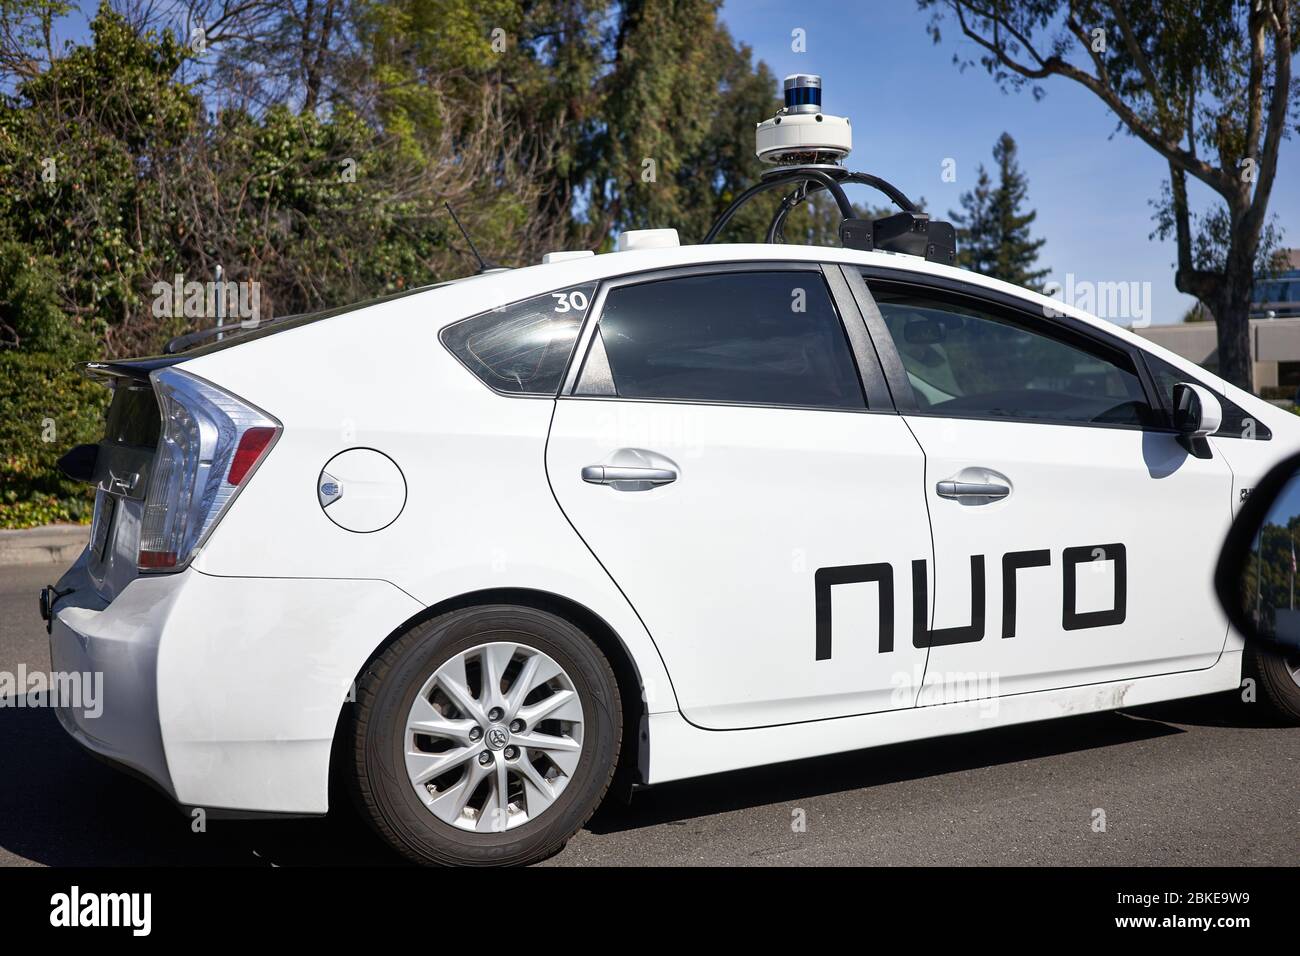 La société américaine de robotique Nuro, voiture auto-pilotante de marque,  est en cours d'essai dans la rue à Mountain View, en Californie Photo Stock  - Alamy